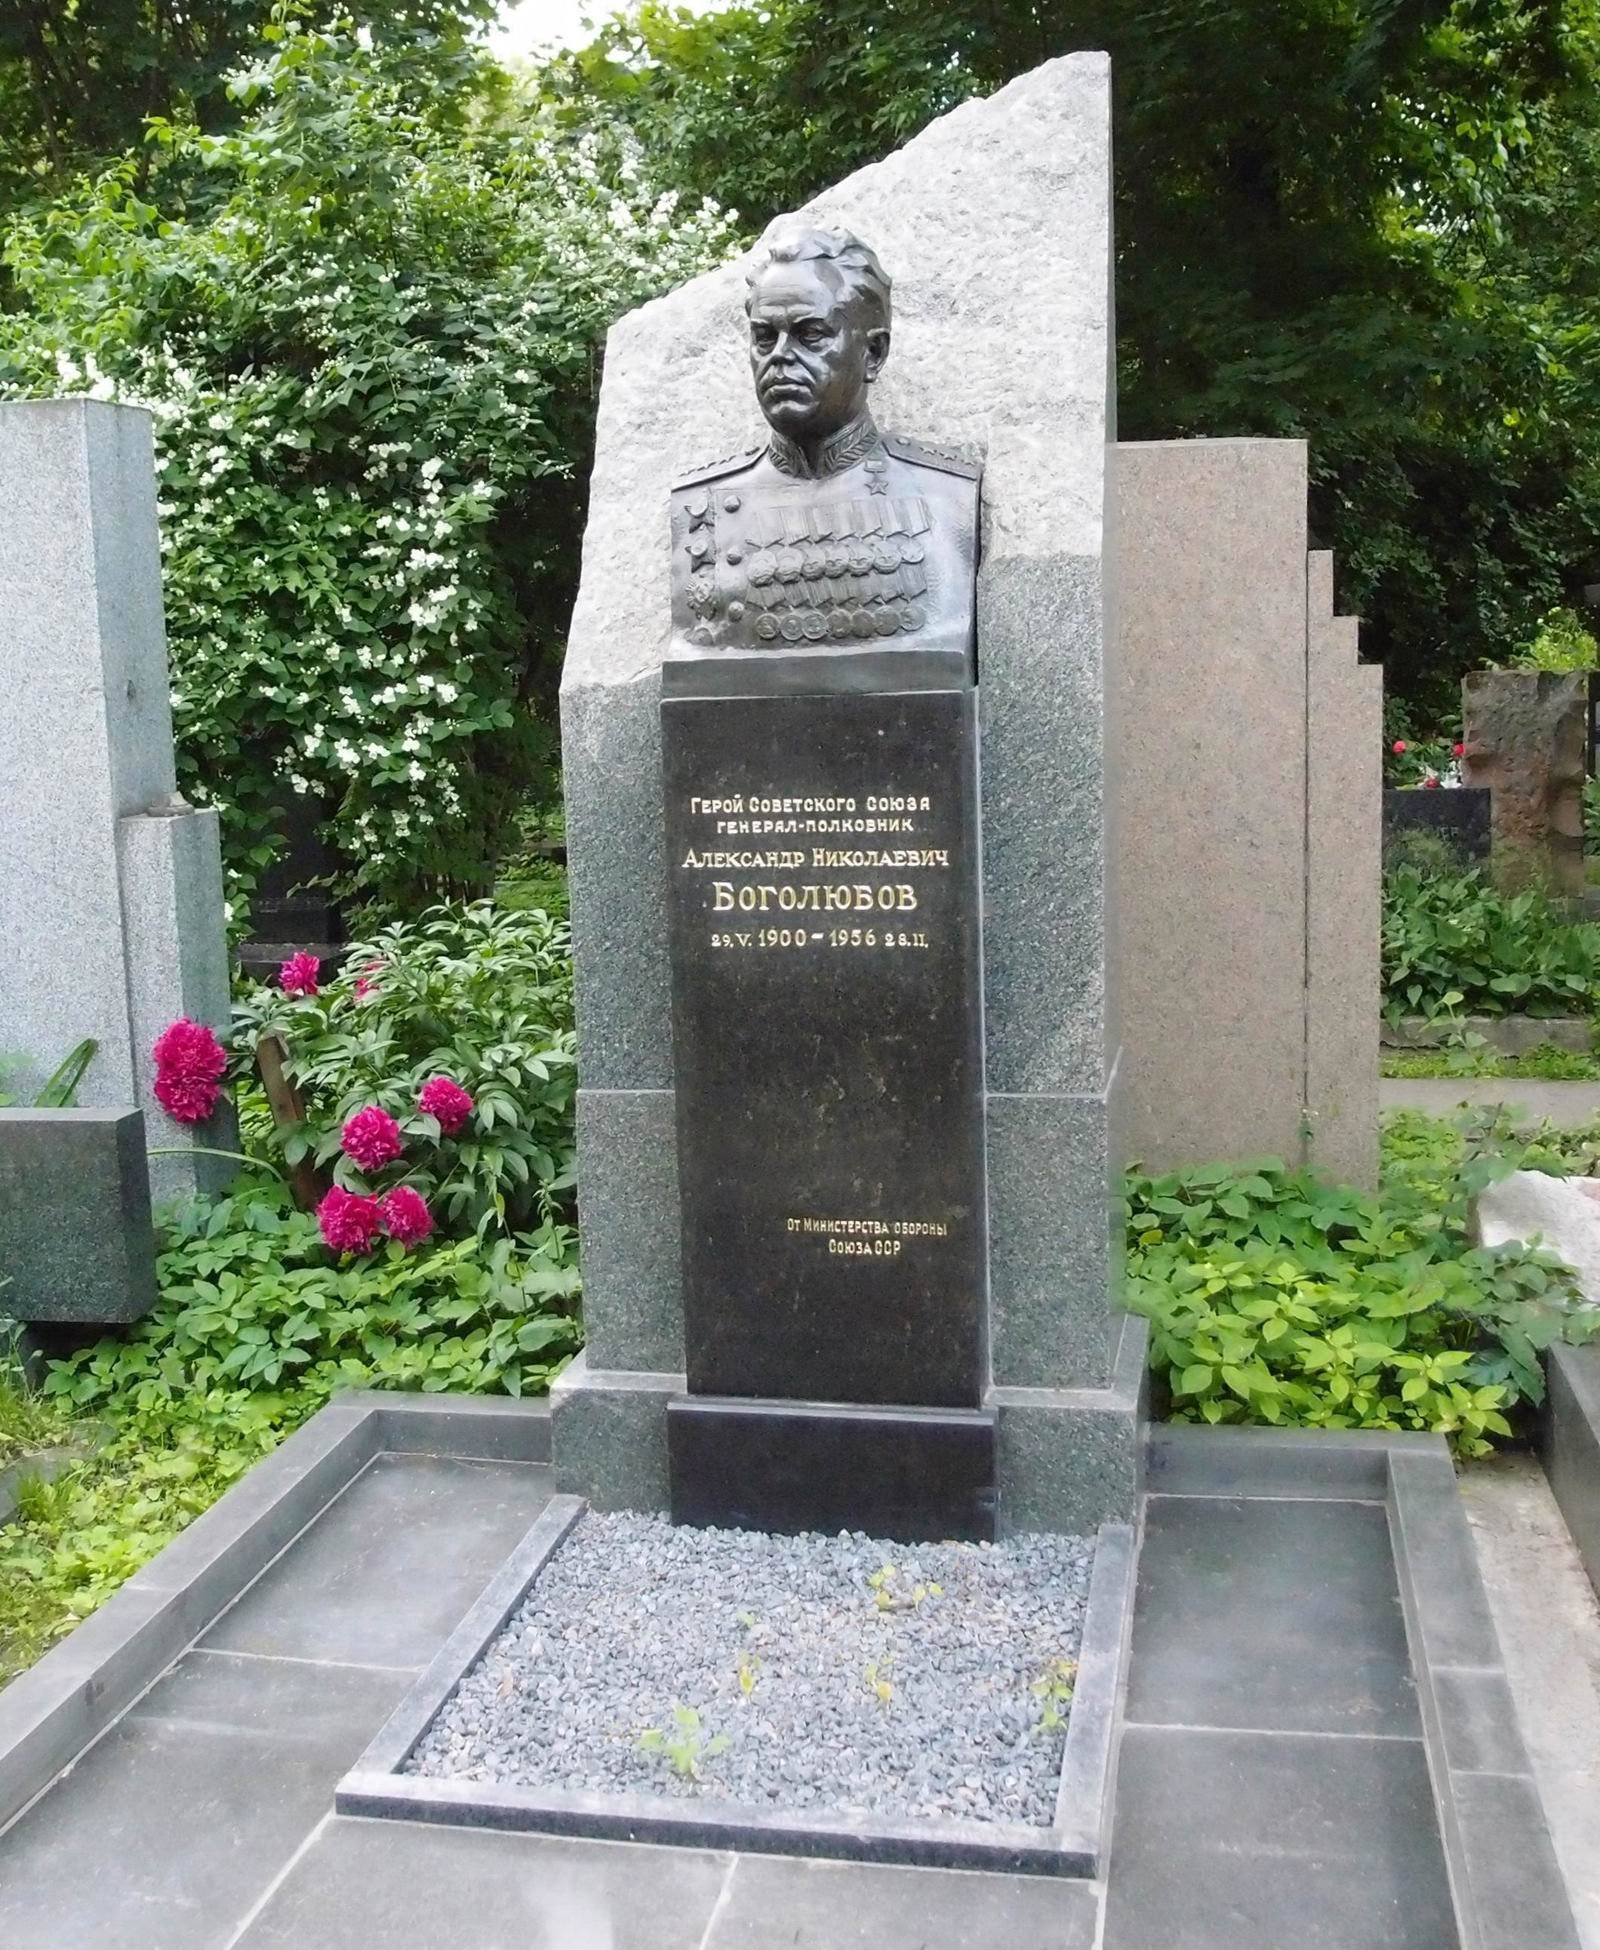 Памятник на могиле Боголюбова А.Н. (1900–1956), ск. Г.Постников, на Новодевичьем кладбище (4–61–6). Нажмите левую кнопку мыши чтобы увидеть фрагмент памятника.